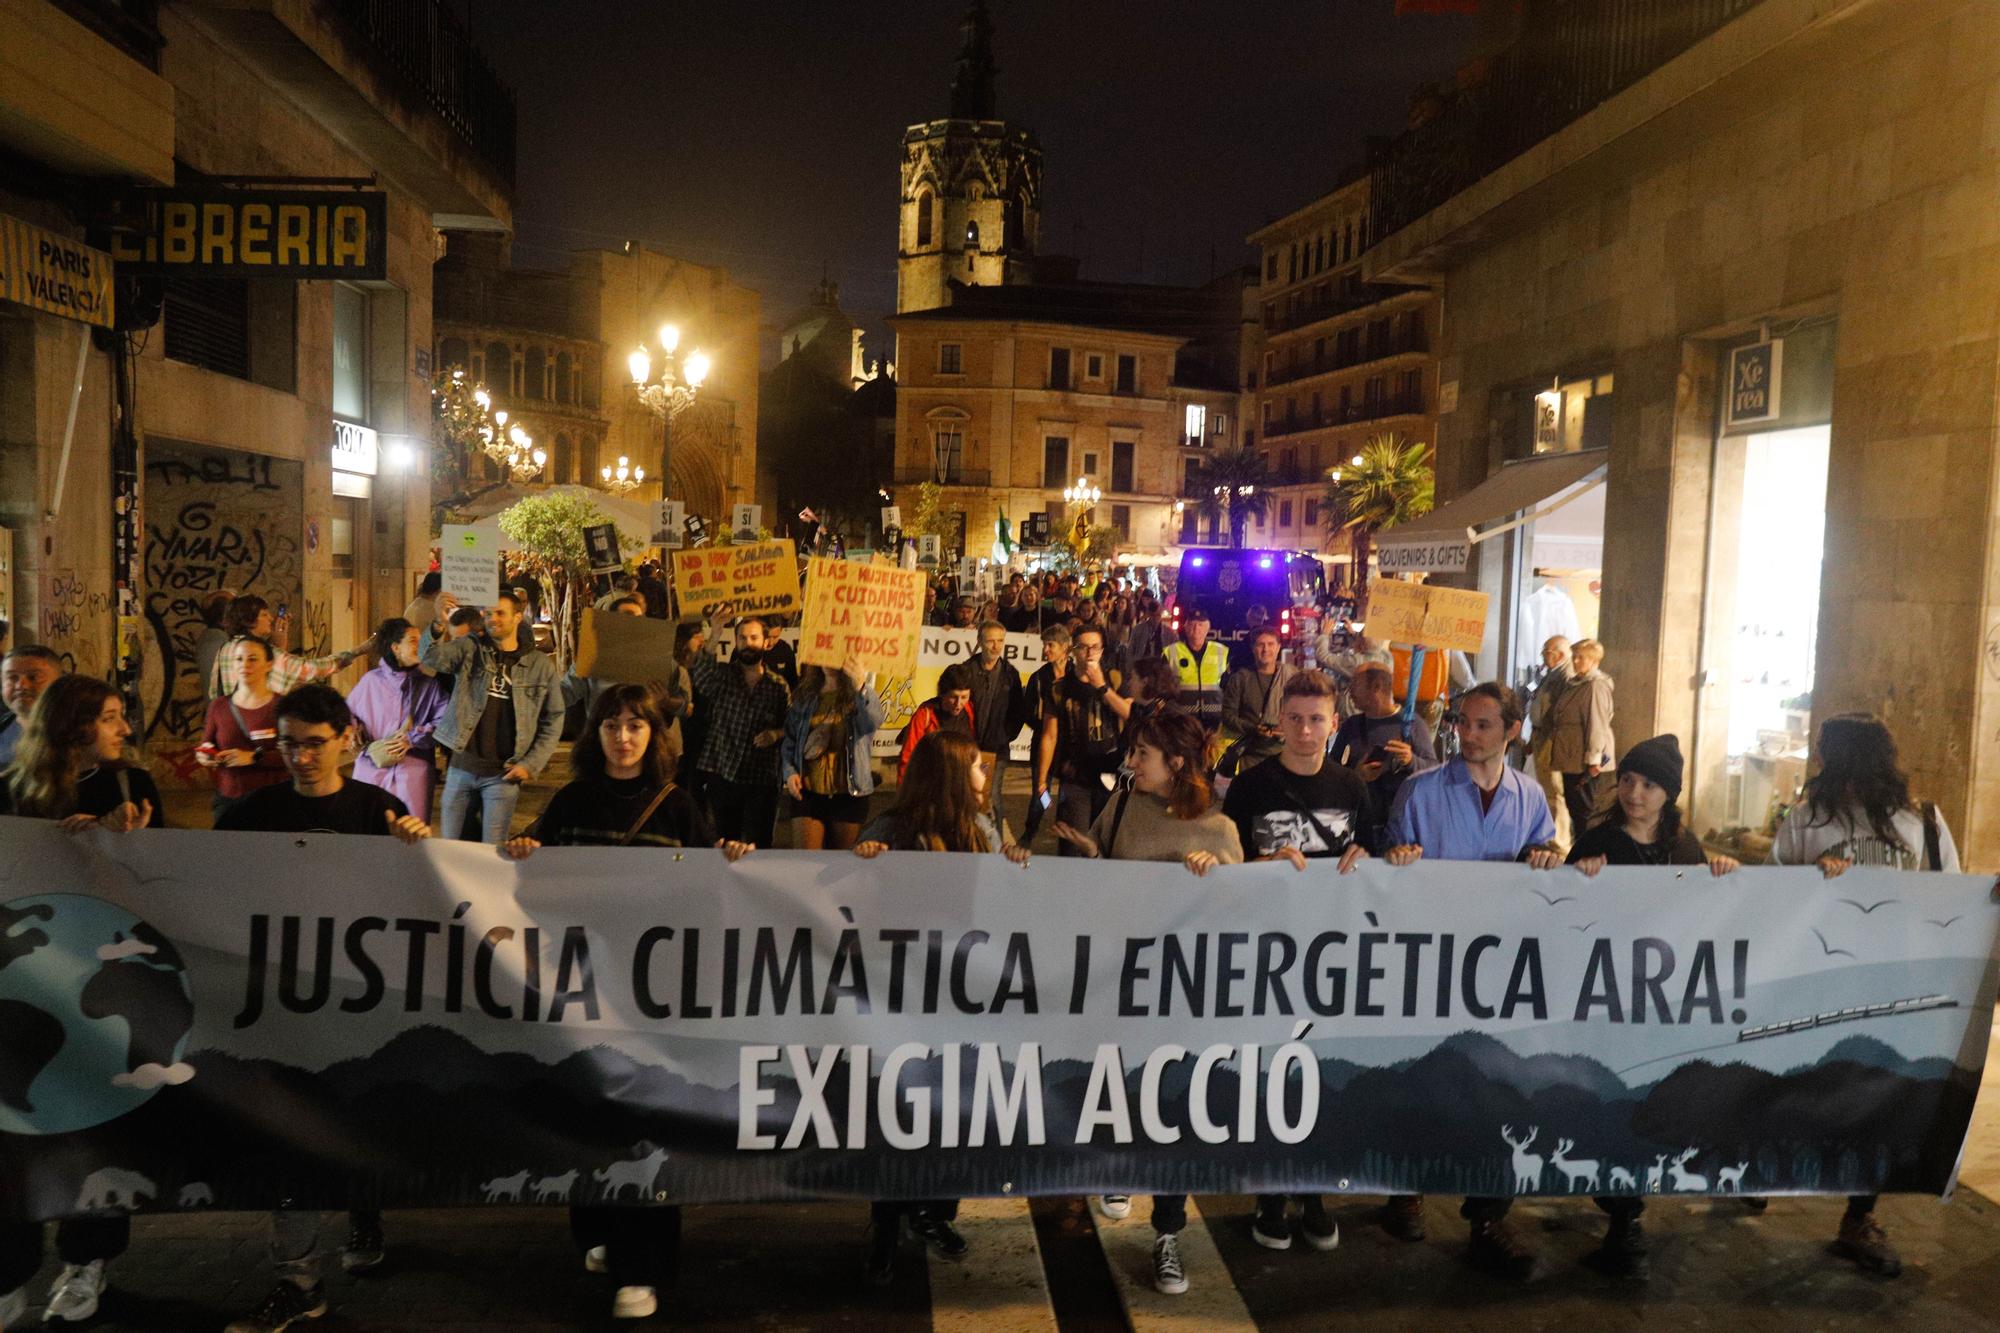 Alianza por el Clima organiza una manifestación en València para exigir justicia climática.